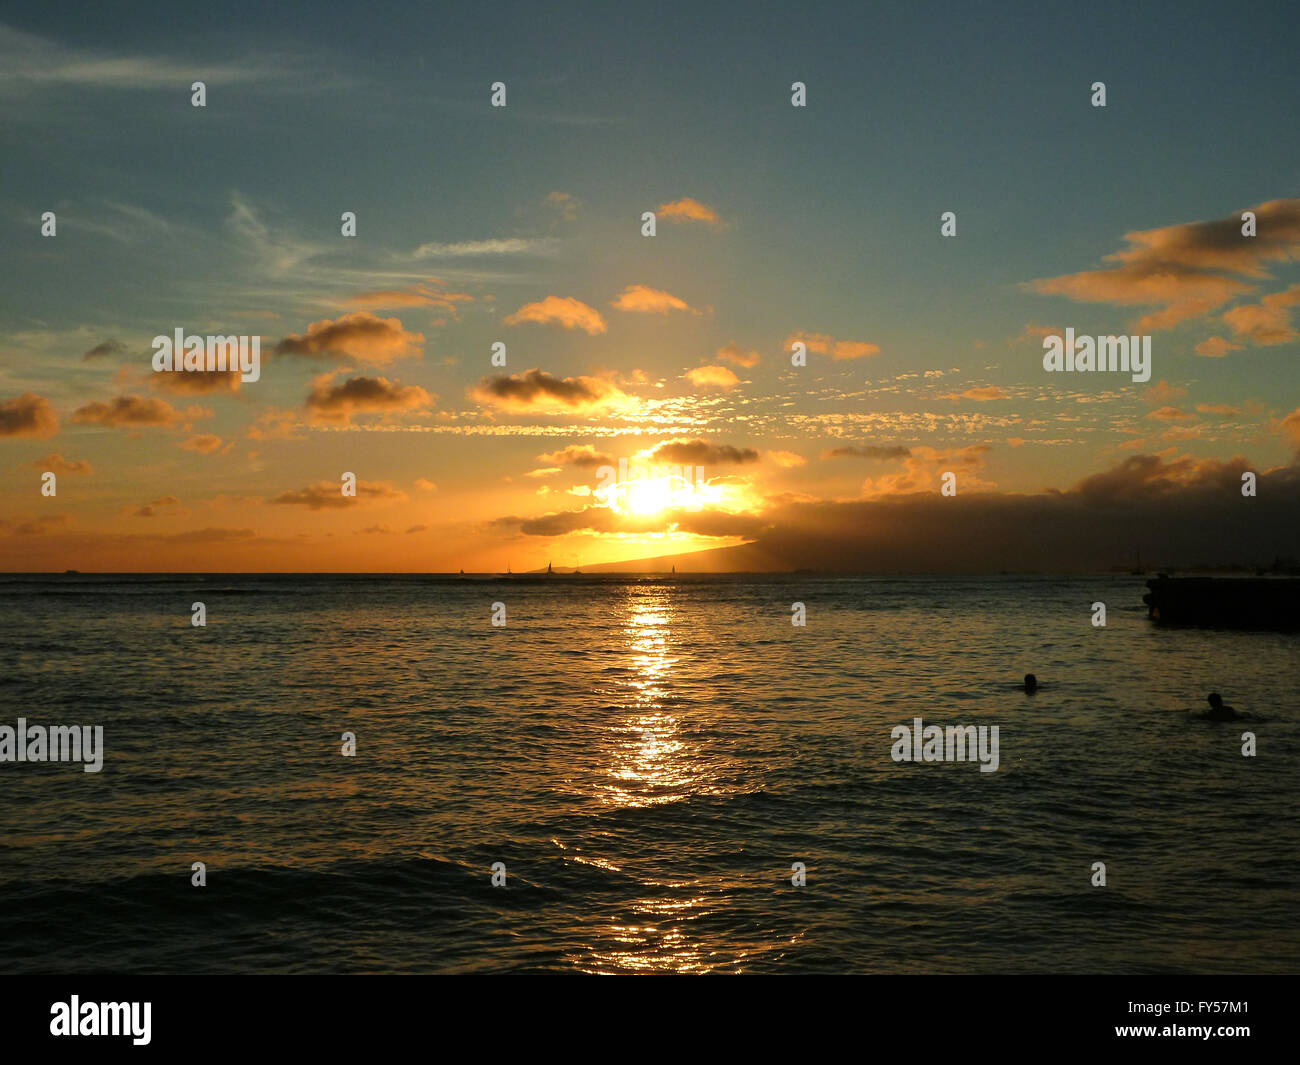 dramatischen Sonnenuntergang auf Kaimana Beach über dem Meer mit Booten Segeln auf dem Wasser auf Oahu, Hawaii. Stockfoto